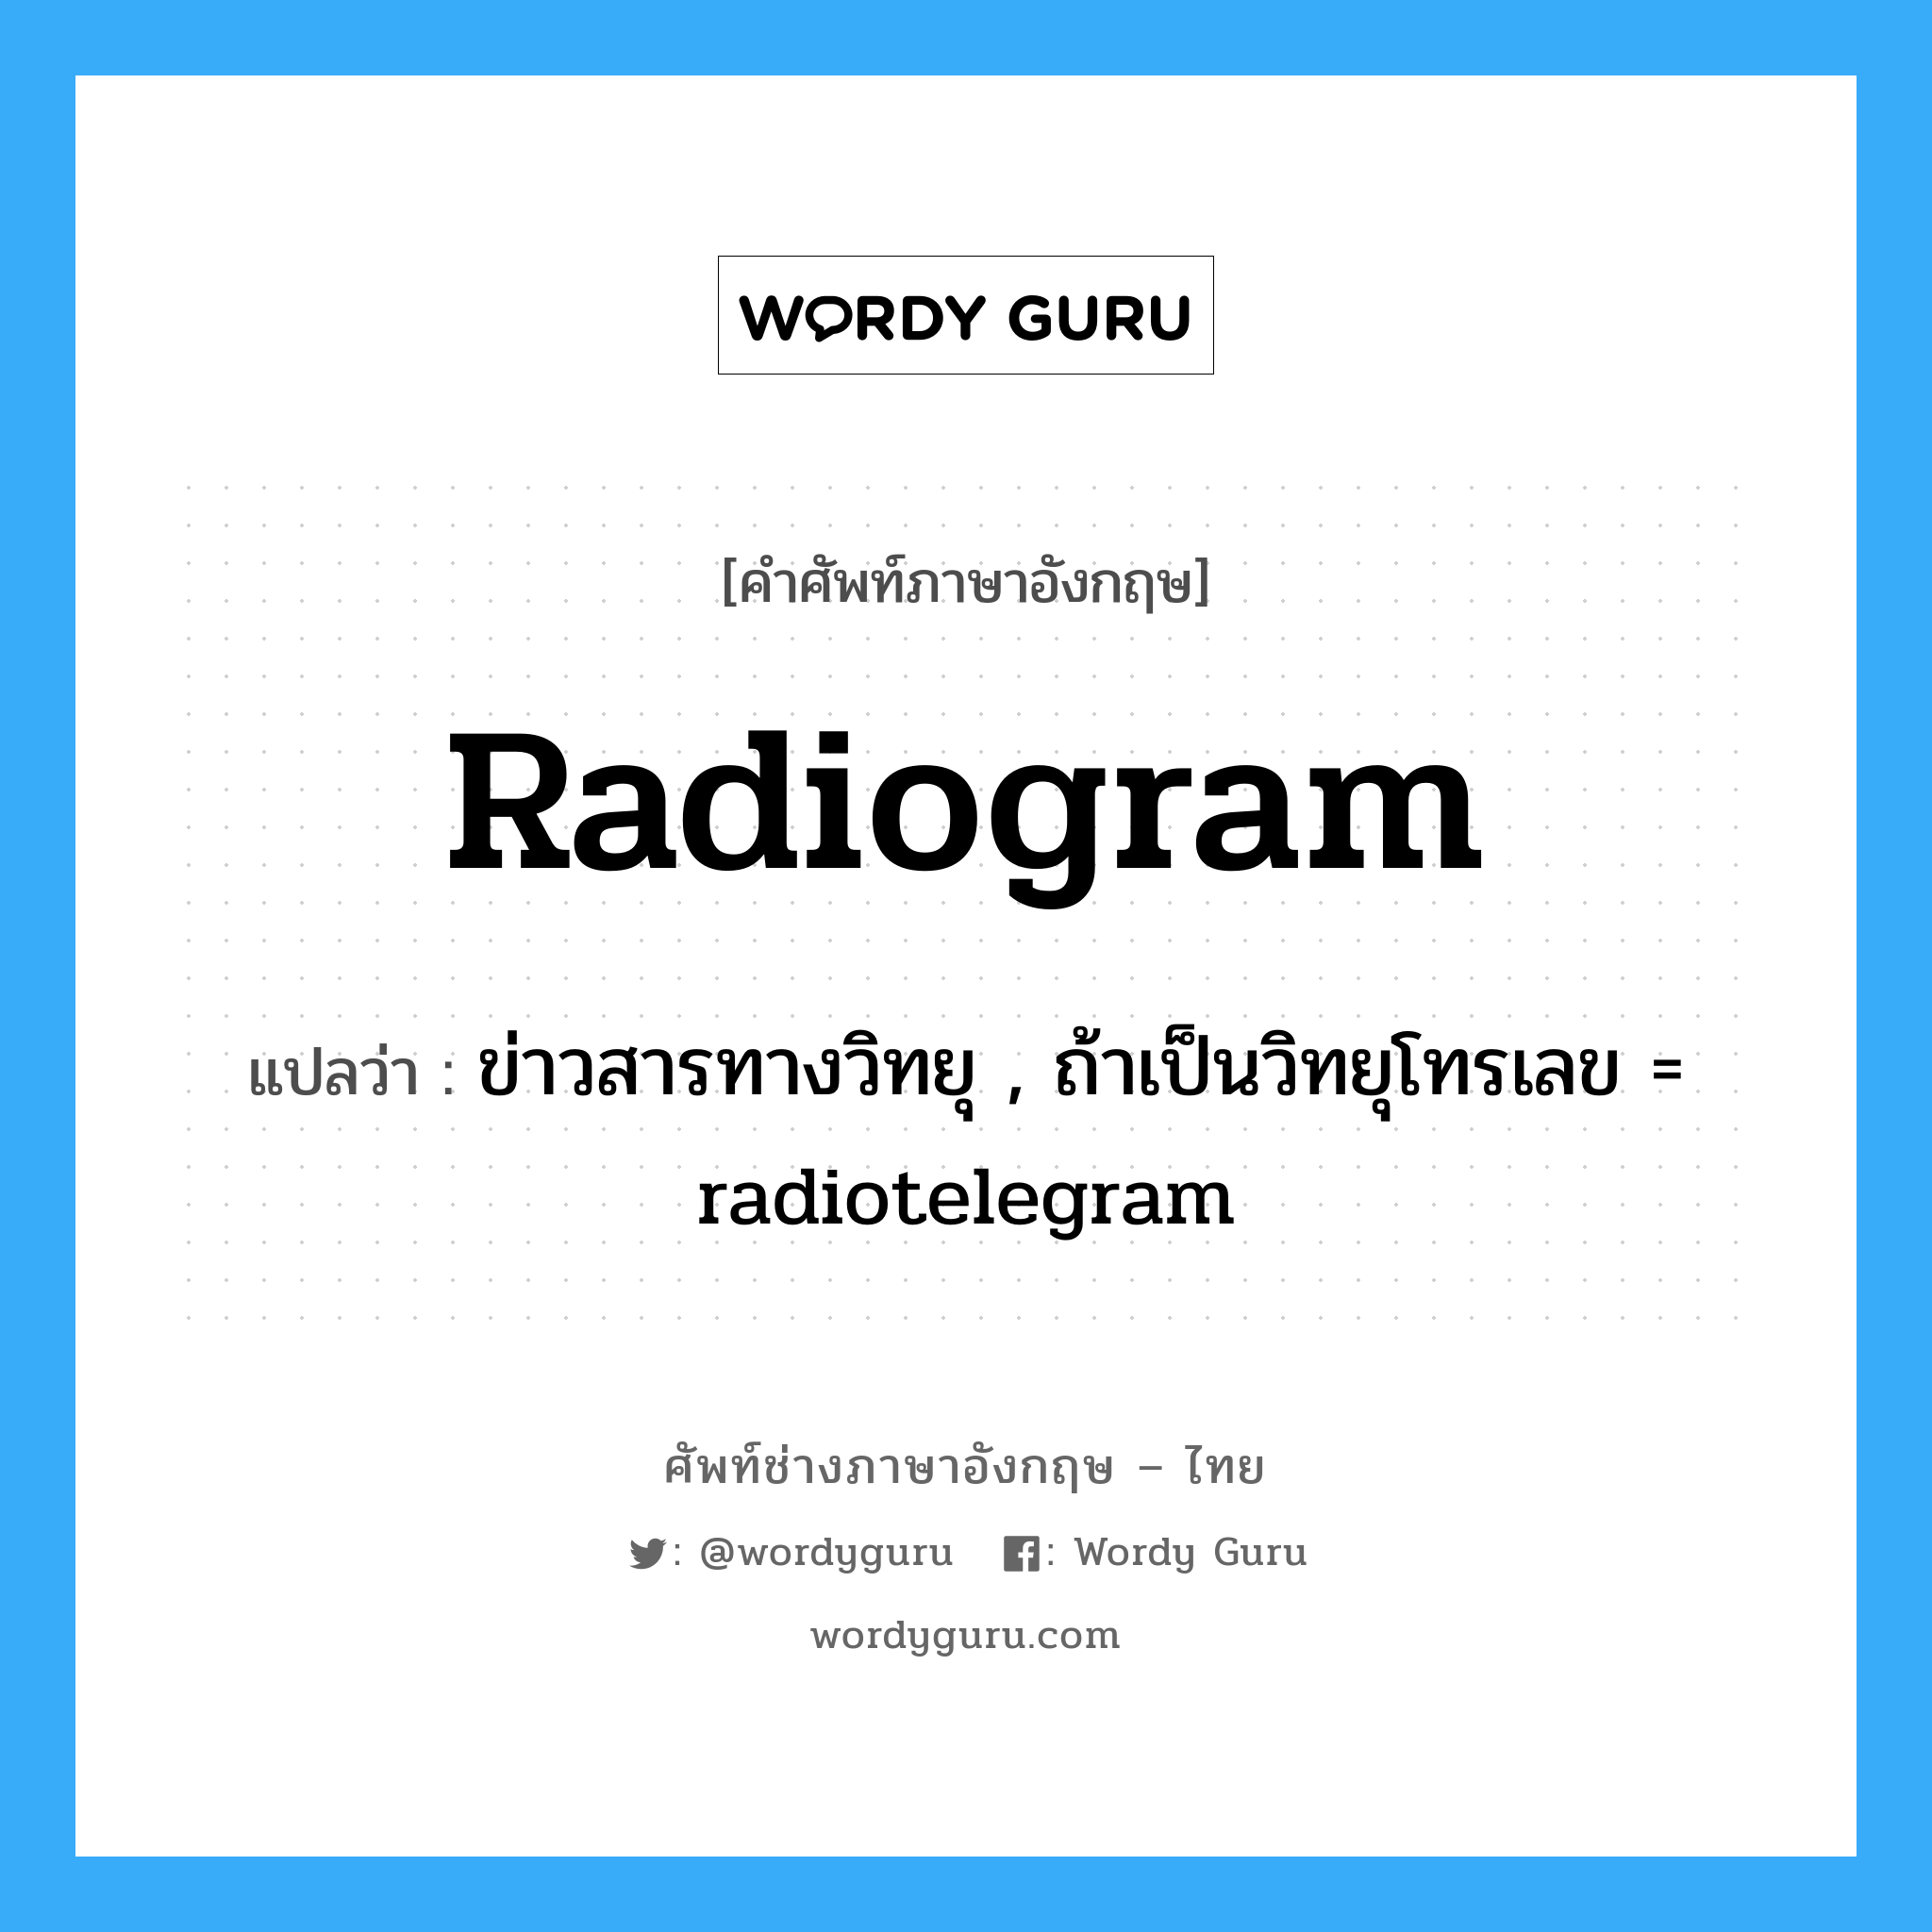 ข่าวสารทางวิทยุ , ถ้าเป็นวิทยุโทรเลข = radiotelegram ภาษาอังกฤษ?, คำศัพท์ช่างภาษาอังกฤษ - ไทย ข่าวสารทางวิทยุ , ถ้าเป็นวิทยุโทรเลข = radiotelegram คำศัพท์ภาษาอังกฤษ ข่าวสารทางวิทยุ , ถ้าเป็นวิทยุโทรเลข = radiotelegram แปลว่า radiogram